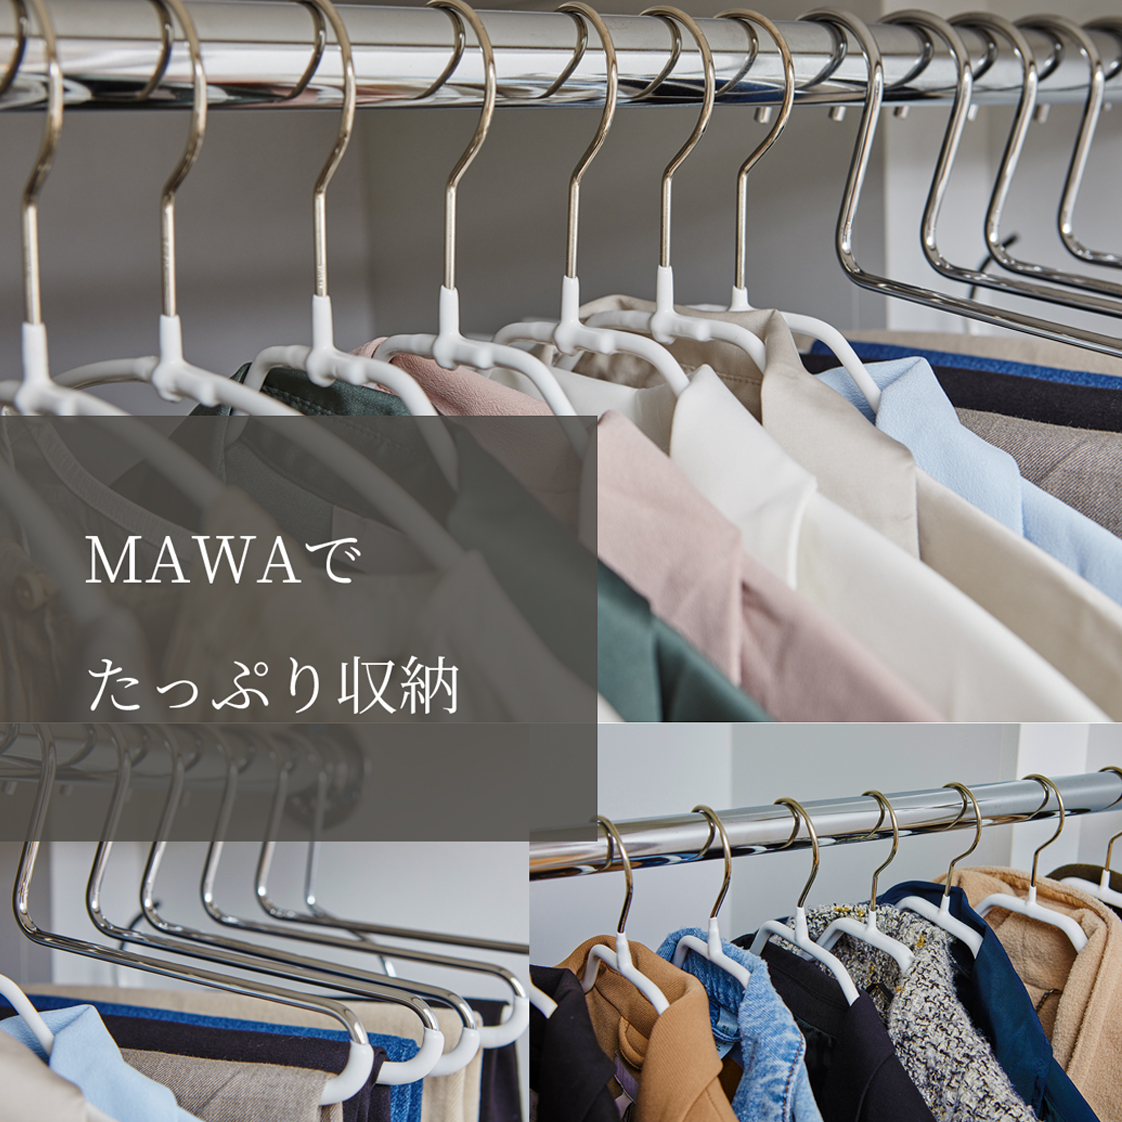 MAWA ハンガー マワ 滑らない すべらない レディースライン エコノミック 40P 60本セット :400660-60:ハンガーインテリアTAMATOSHI  通販 